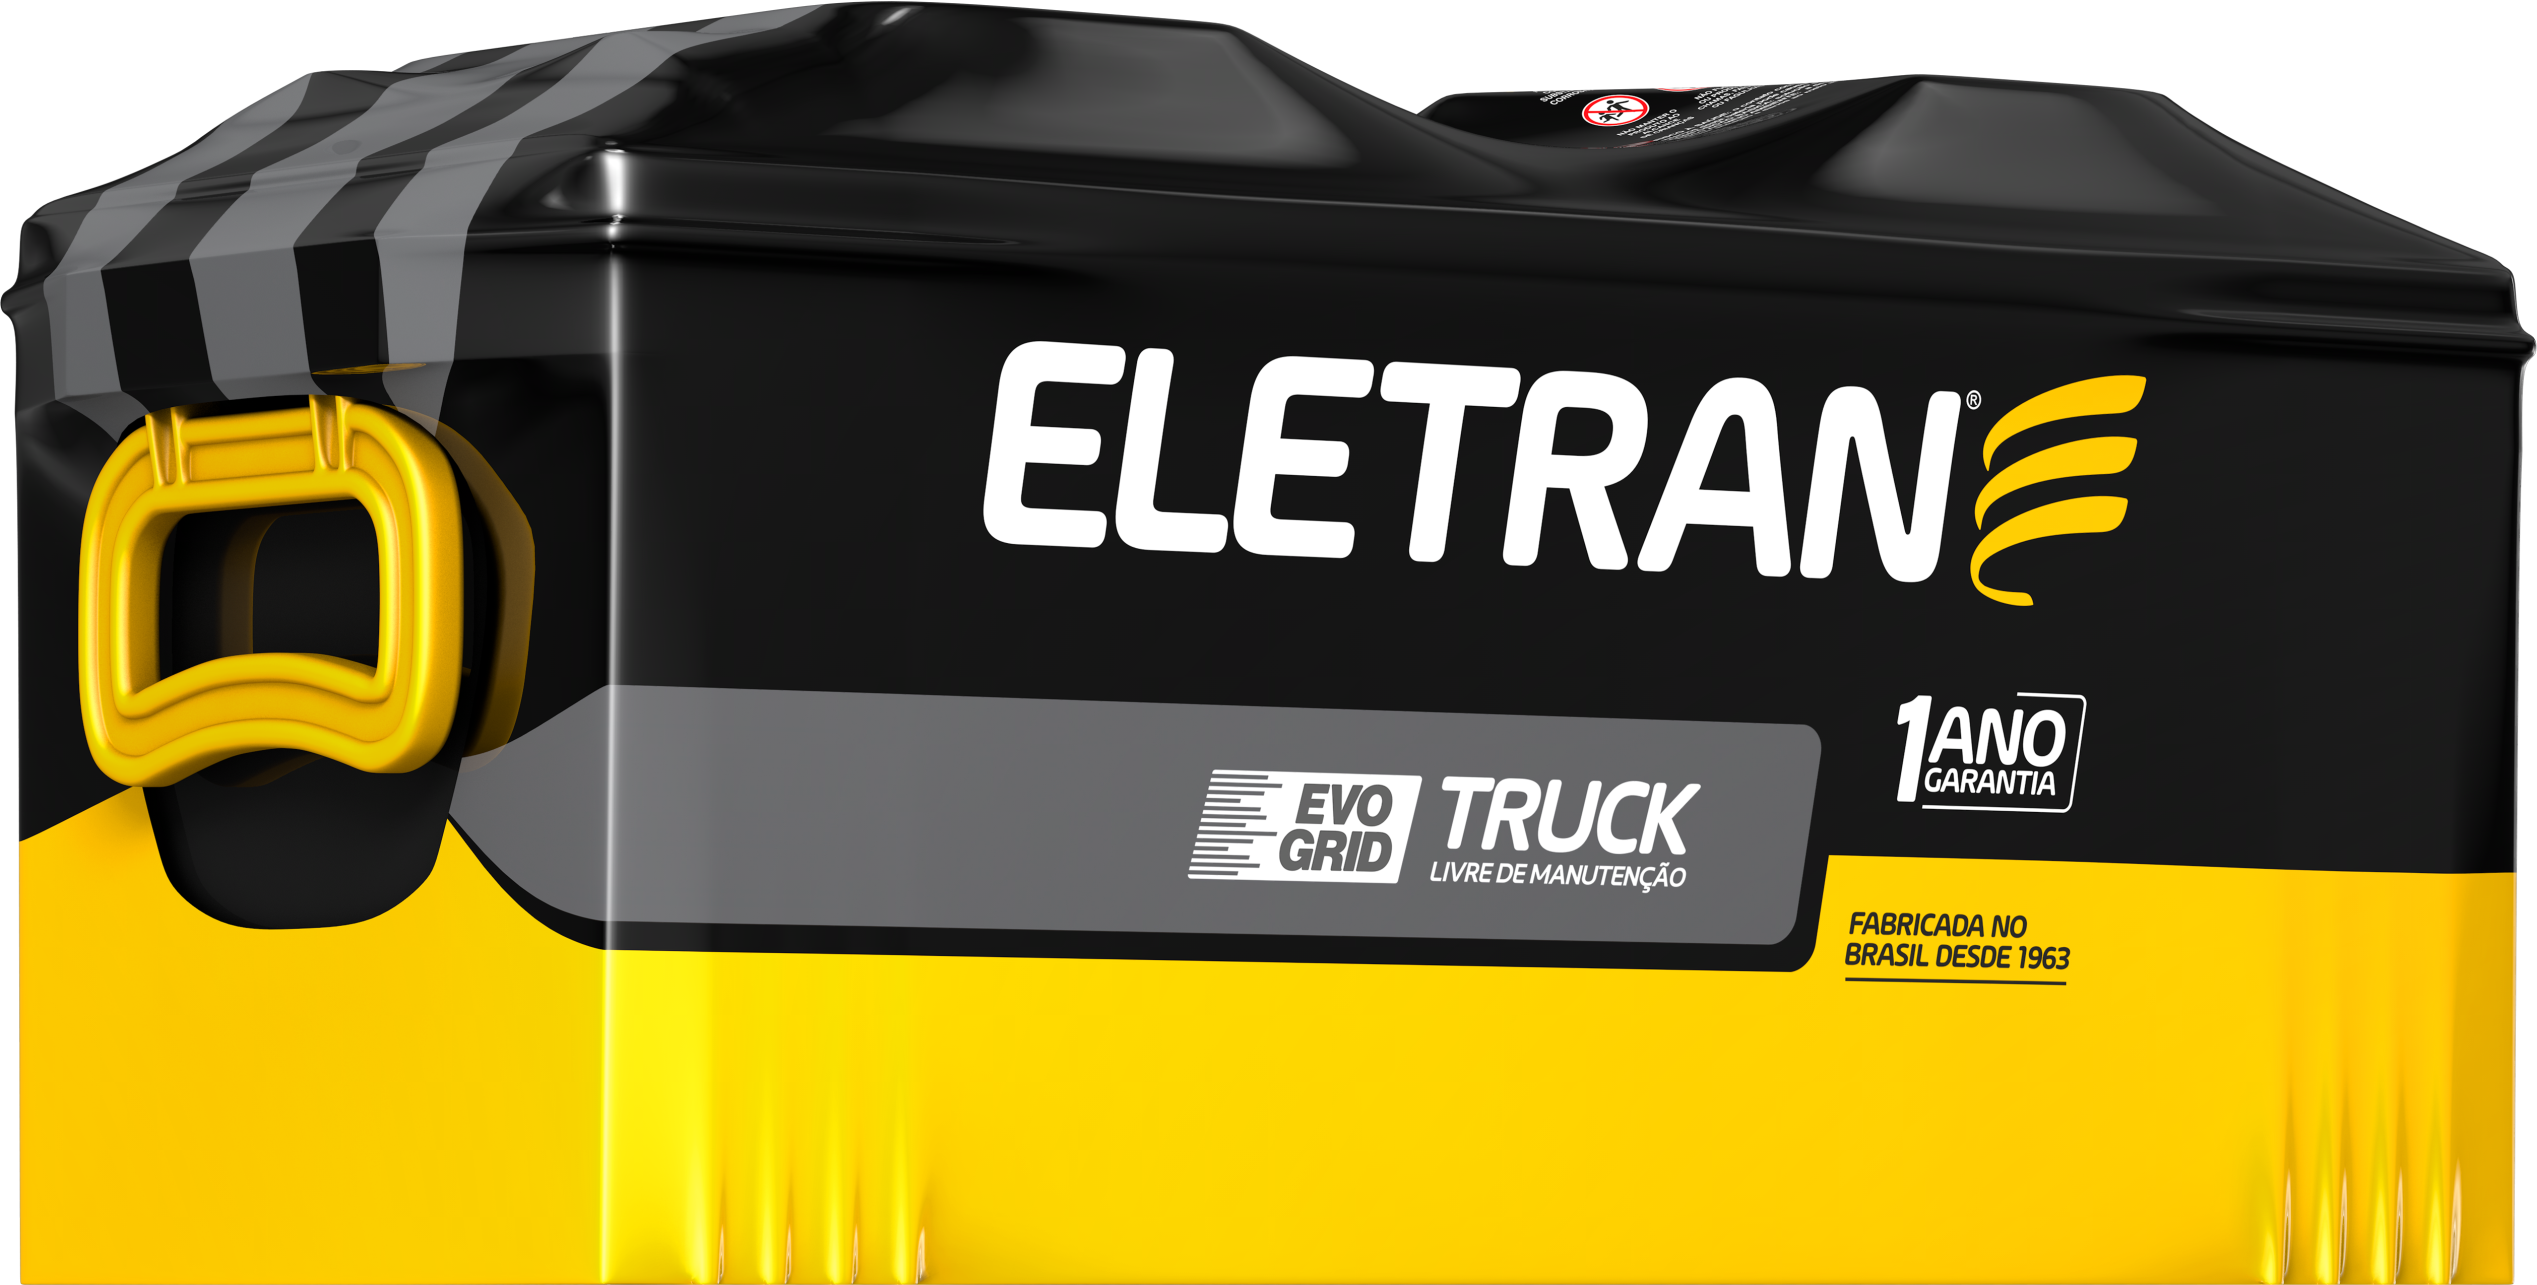  Eletran truck